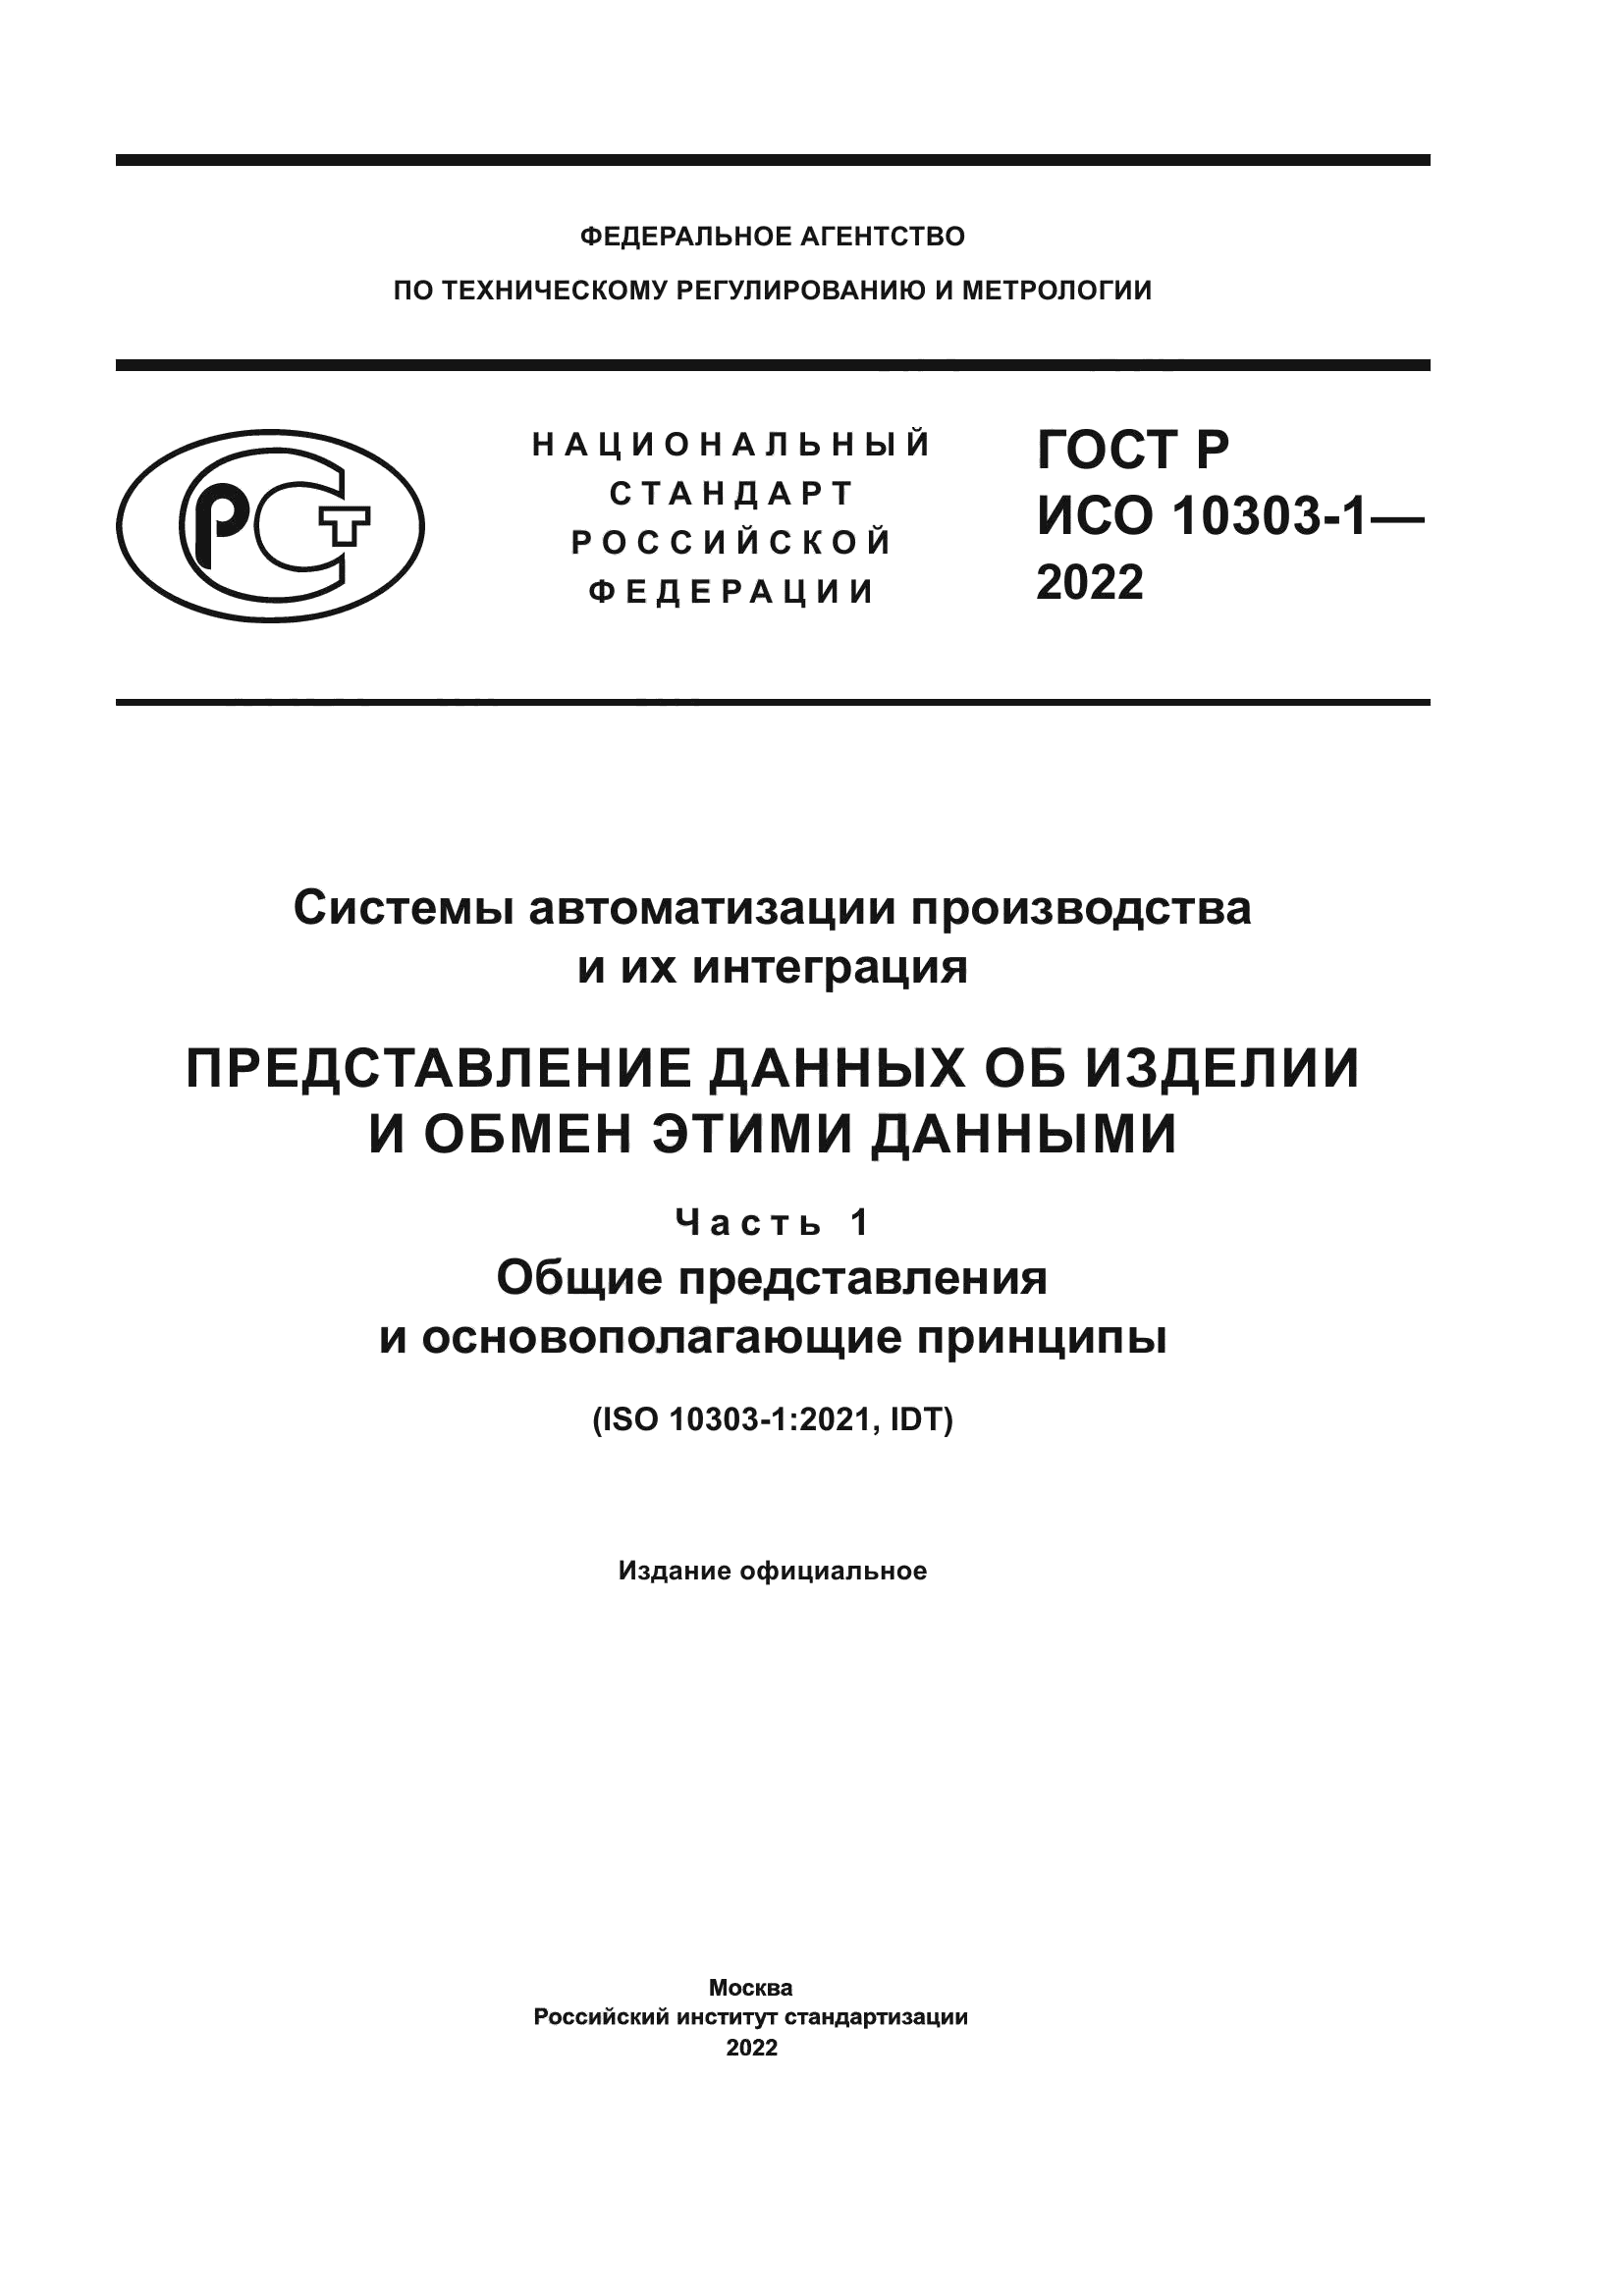 ГОСТ Р ИСО 10303-1-2022